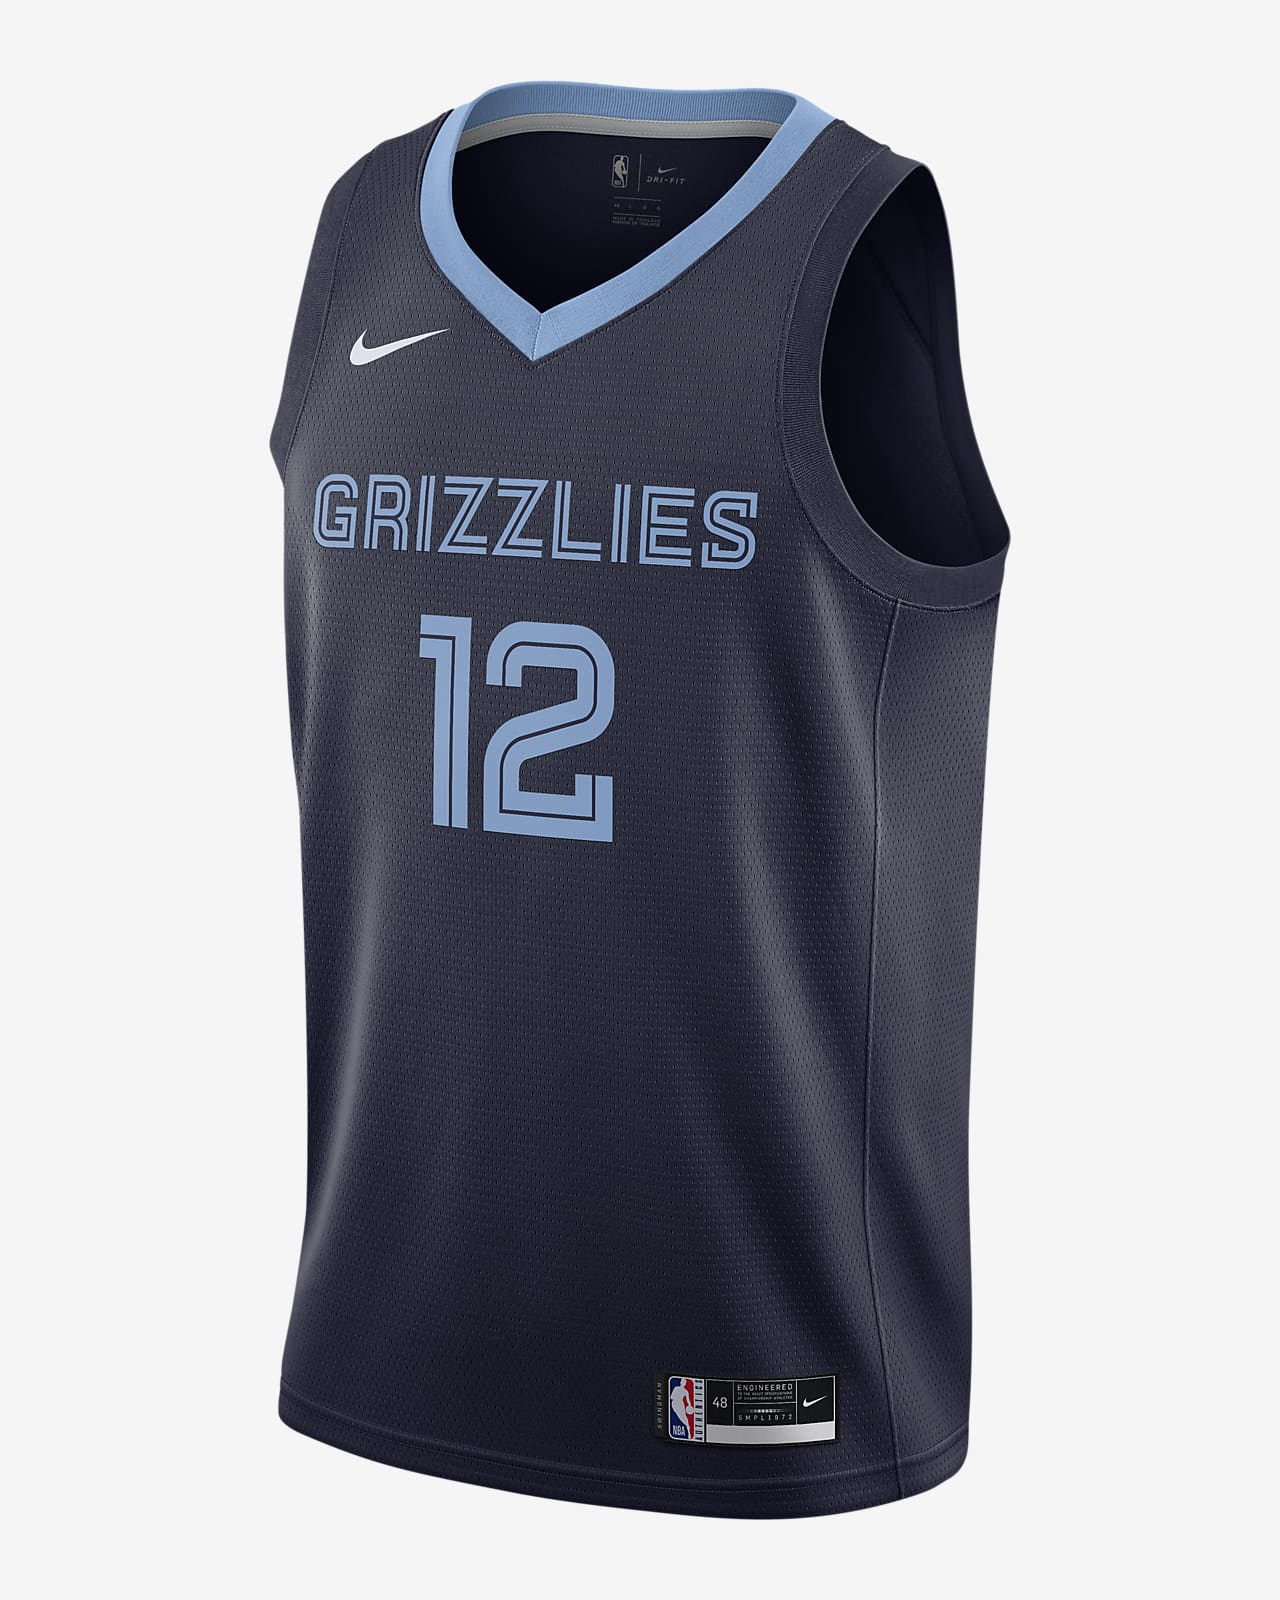 เสื้อแข่ง Nike NBA Swingman Ja Morant Grizzlies Icon Edition 2020